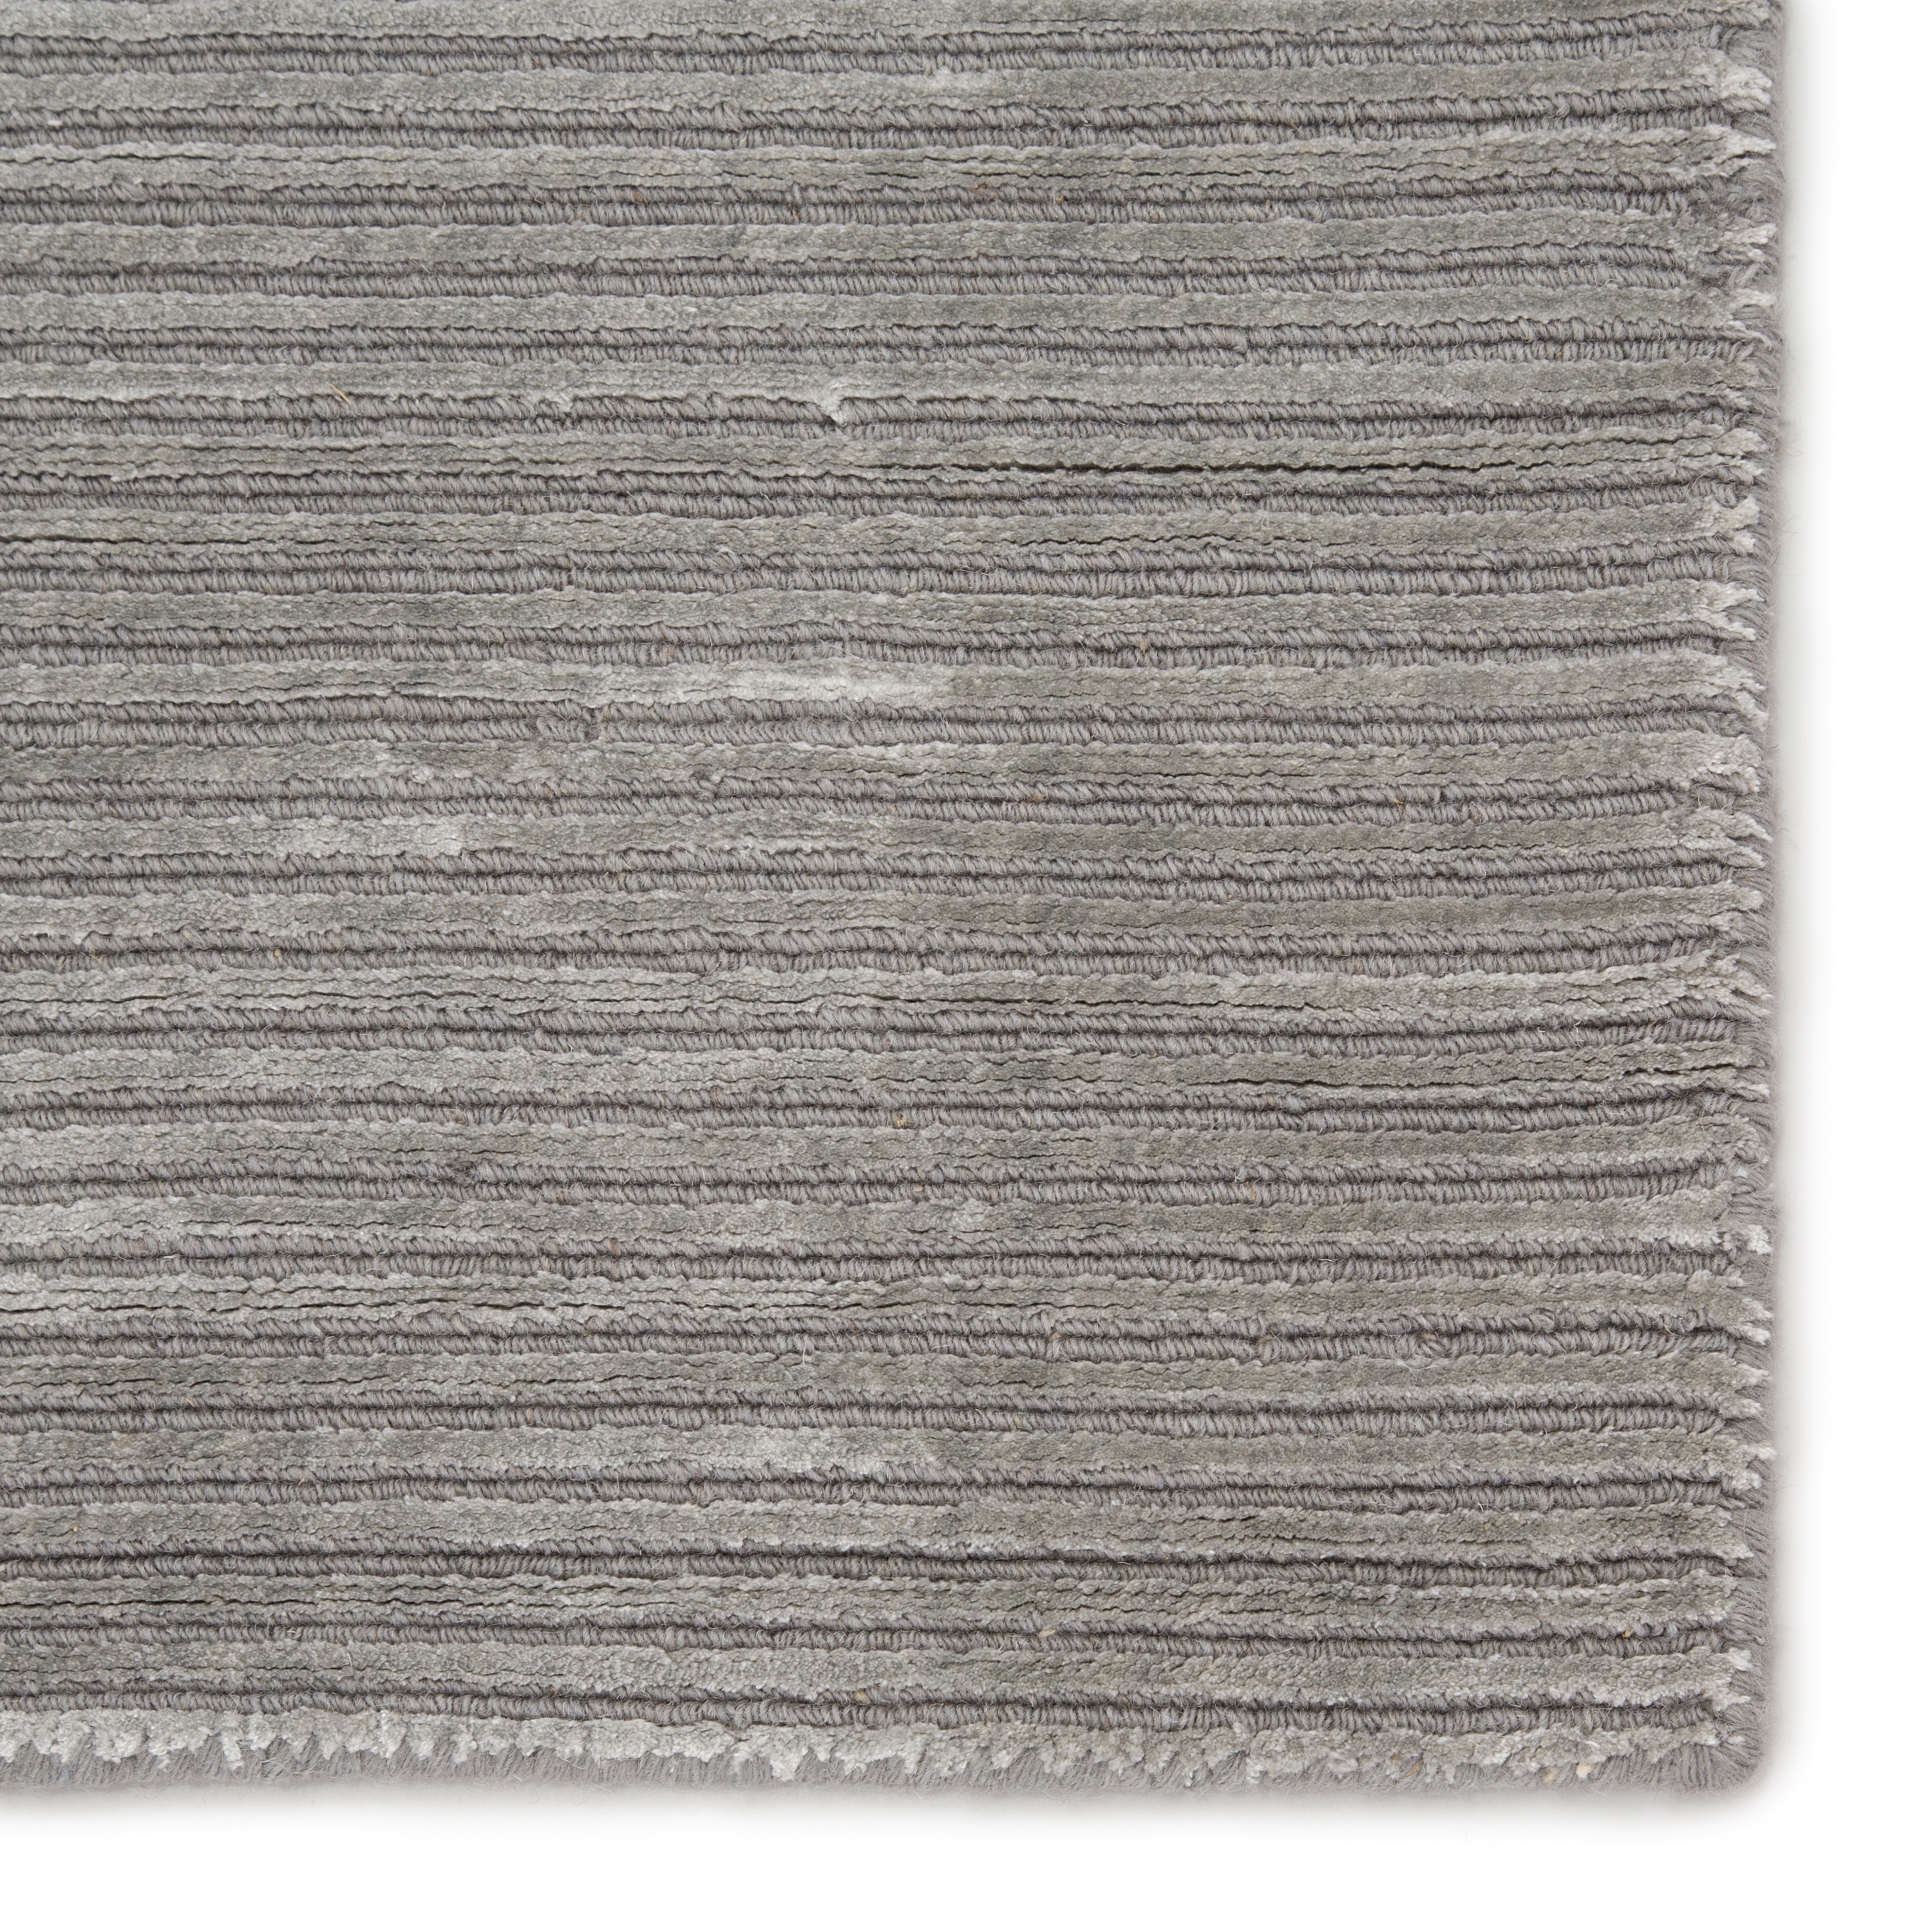 Basis Handmade Solid Gray/ Silver Area Rug (10' X 14') - Image 3